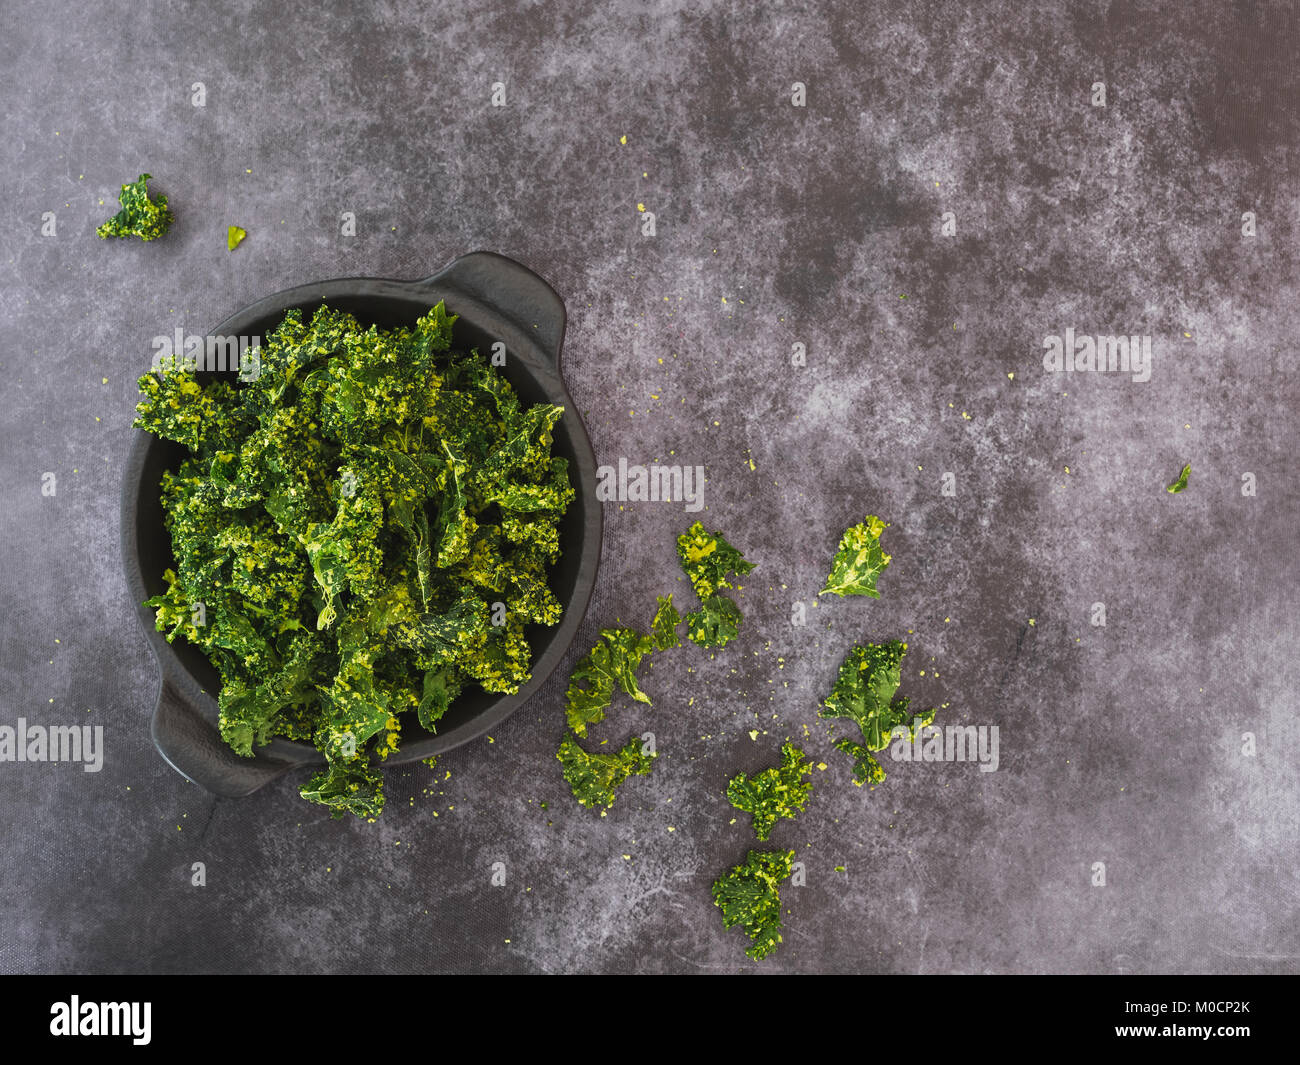 Kale chips cuits au four fait maison recouvert d'huile d'olive et saupoudré de sel de mer sur une plaque. Vue de dessus, l'arrière-plan sombre, l'espace vide Banque D'Images